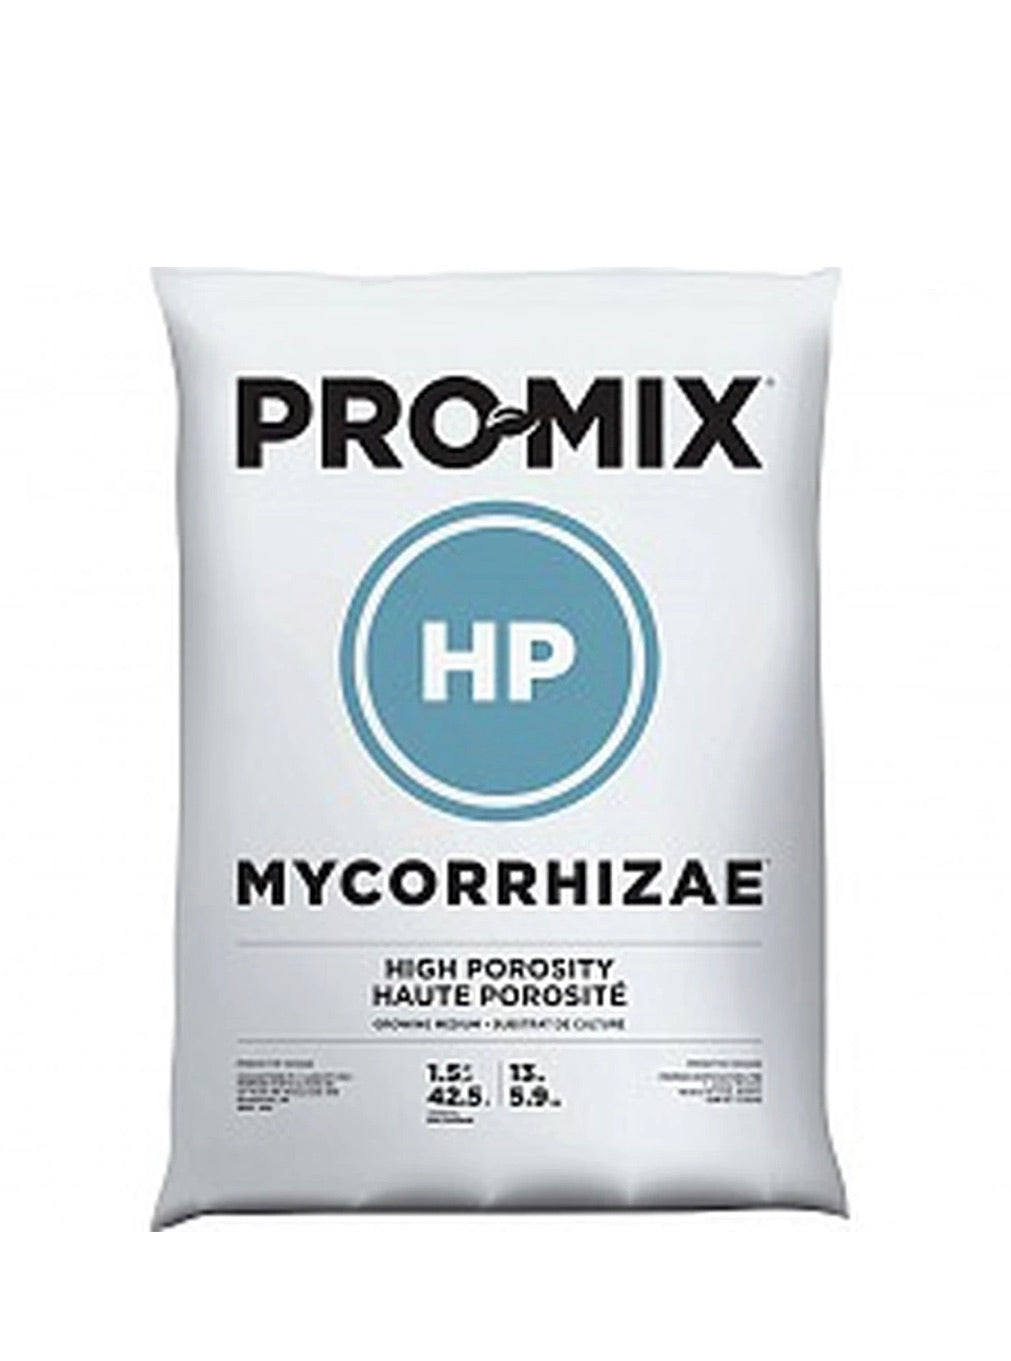 Promix HP 25lb Bag